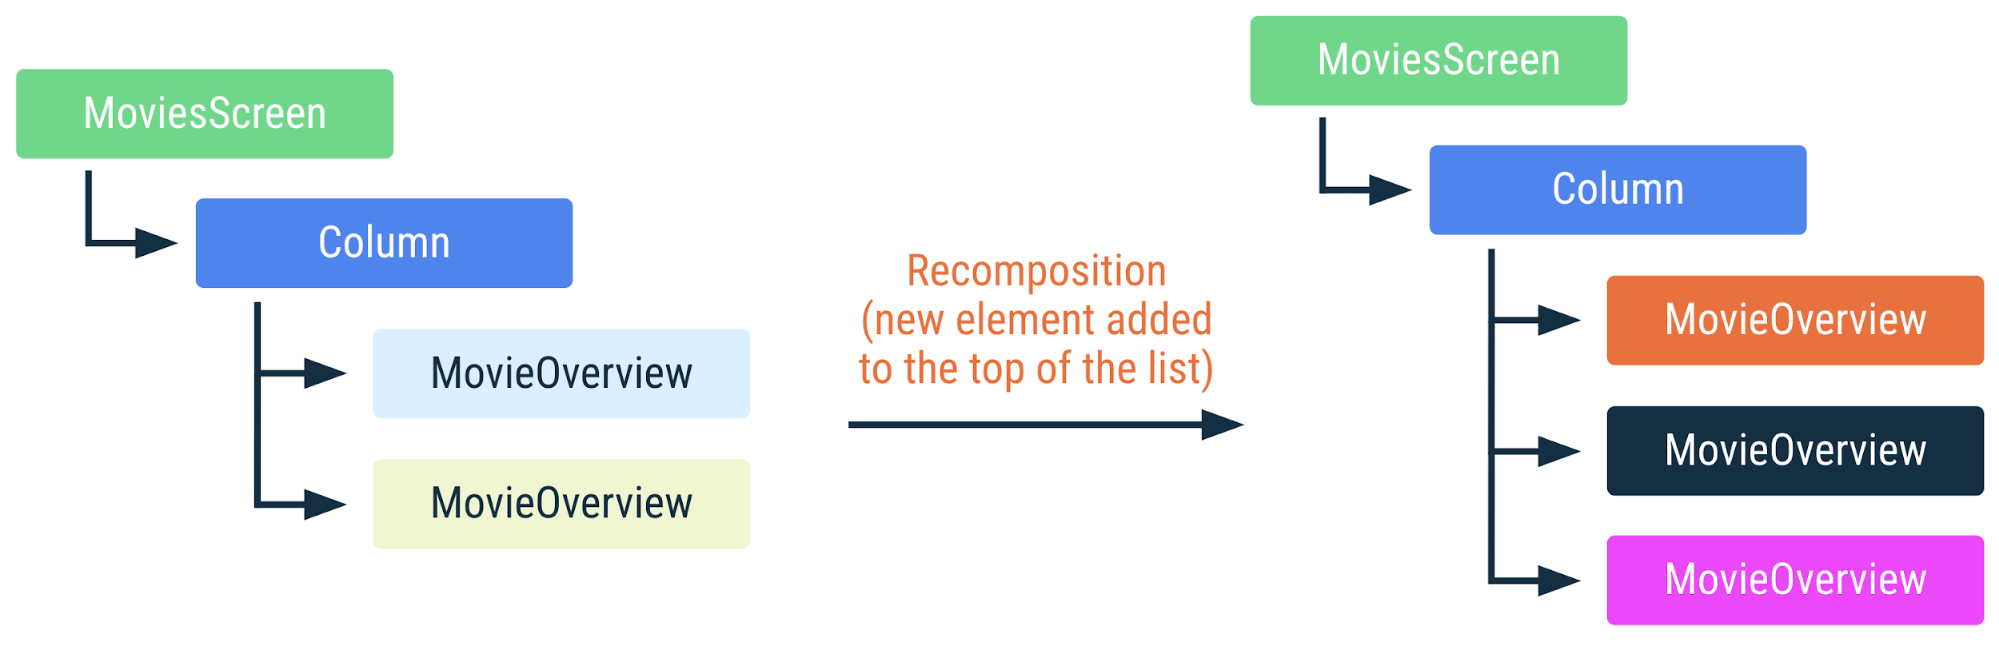 نموداری که نشان می دهد اگر یک عنصر جدید به بالای لیست اضافه شود، چگونه کد قبلی دوباره ترکیب می شود. هر مورد دیگر در لیست موقعیت خود را تغییر می دهد و باید دوباره ترکیب شود.